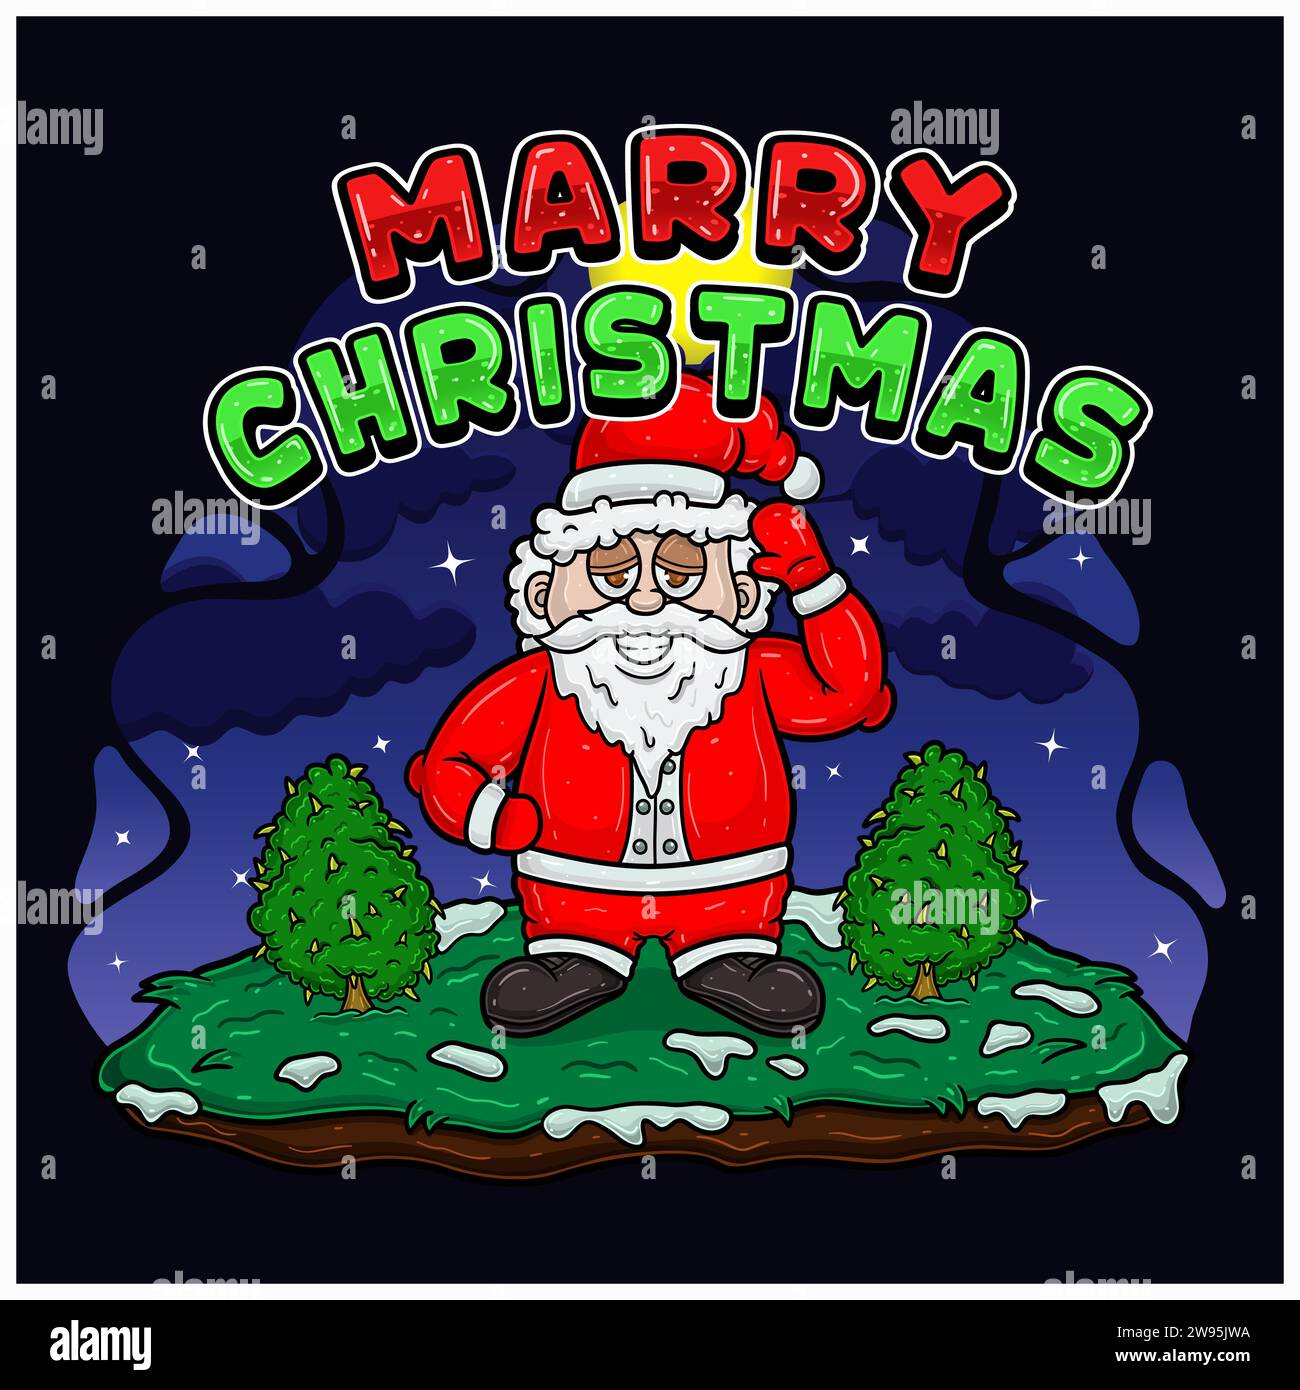 Heiraten Sie Weihnachtstext und Weihnachtsmann-Charakter. Mit High, Cannabis Tree und Hintergrund. Vektorabbildung. Stock Vektor